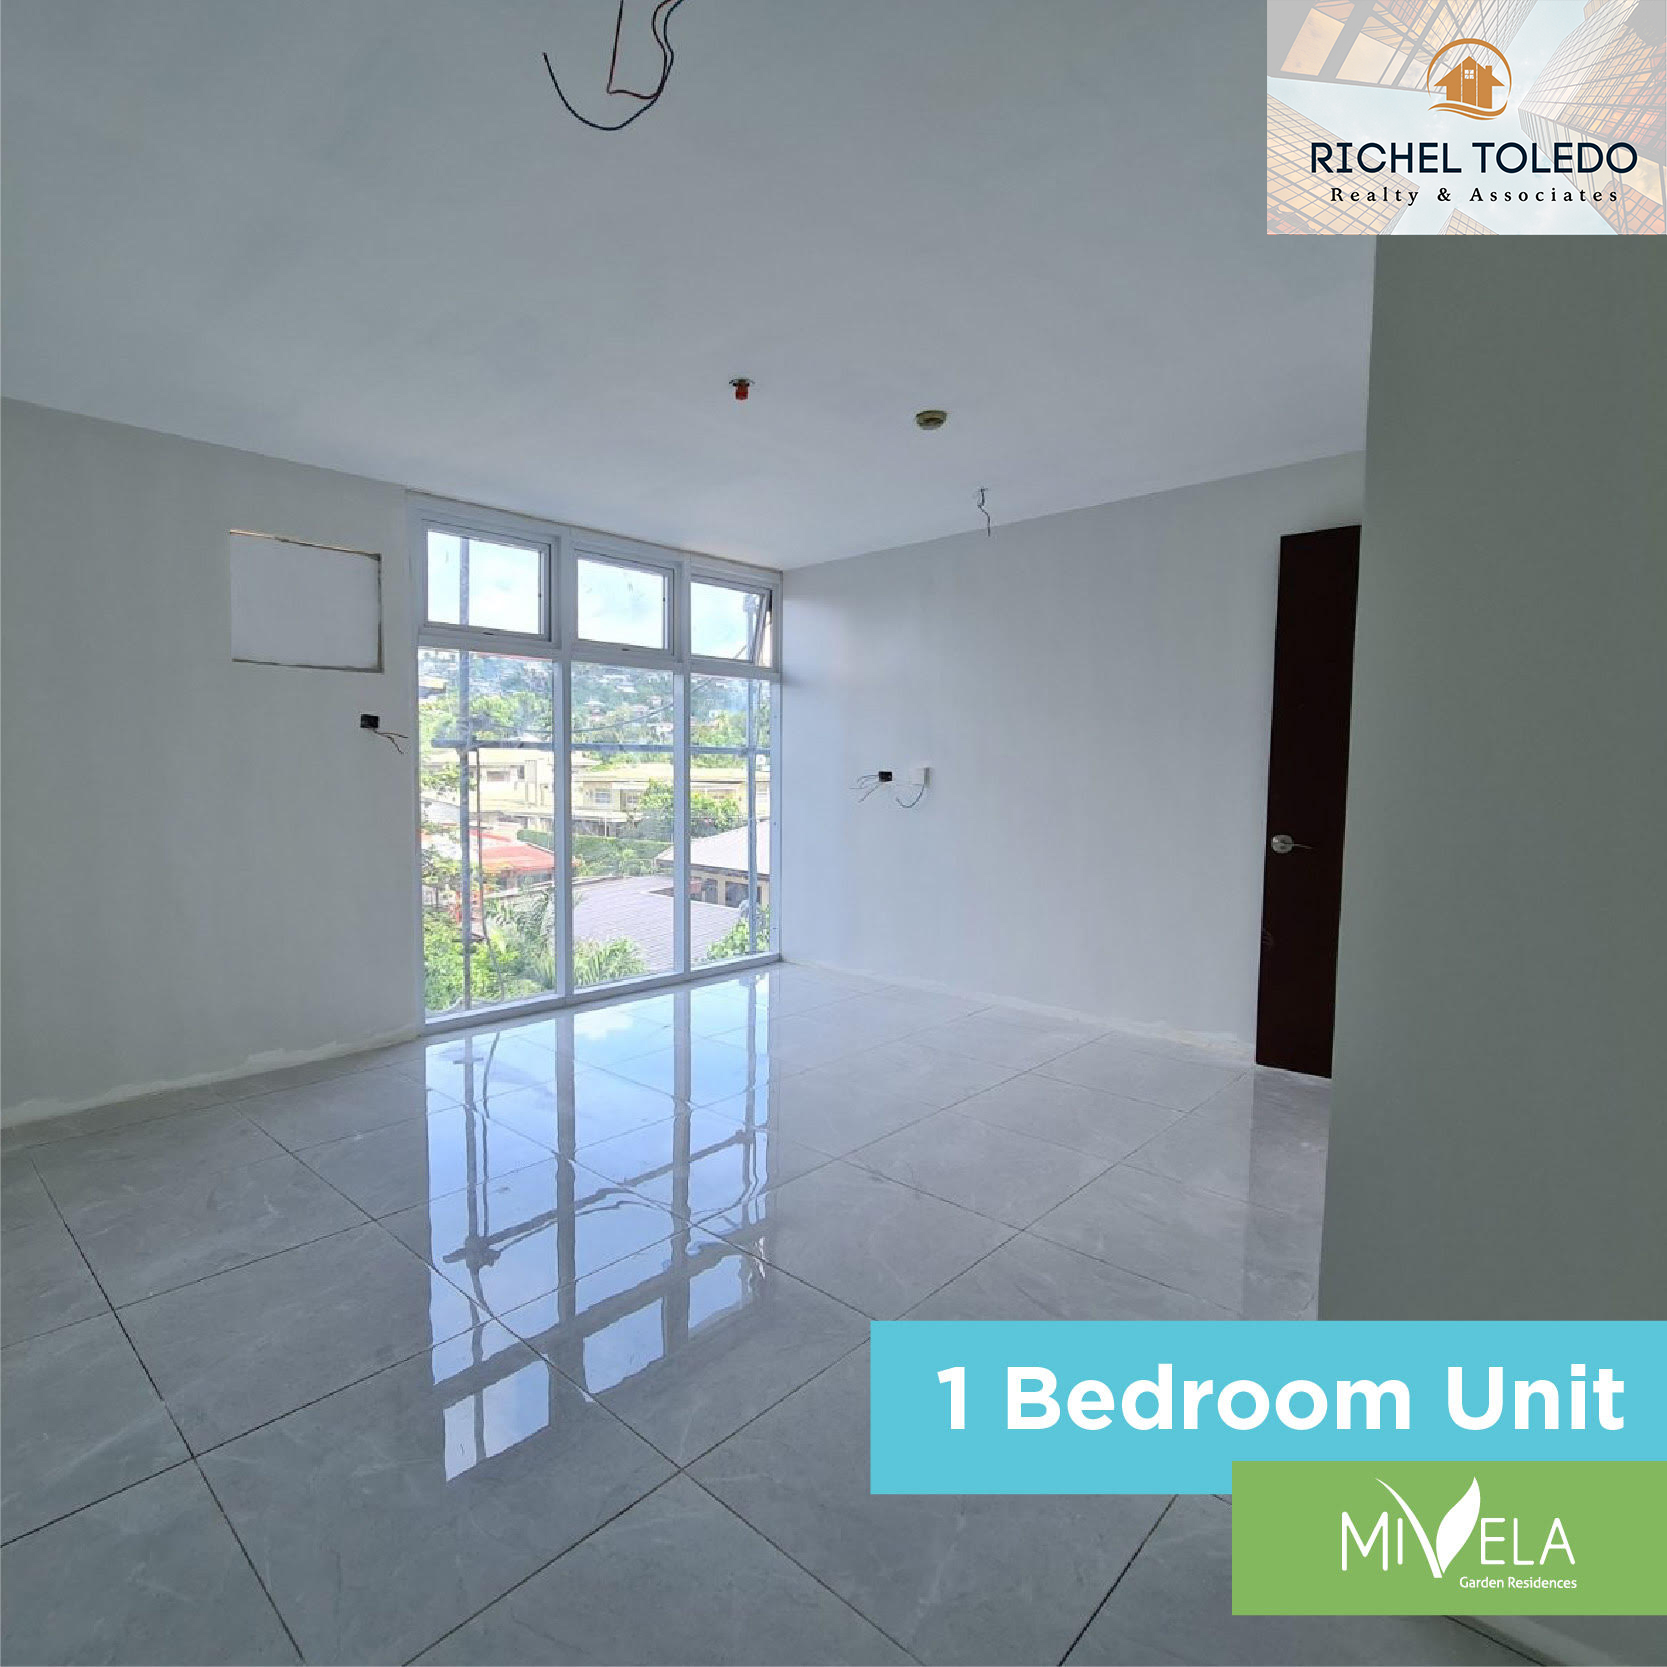 1 bedroom with balcony for sale in cebu city, mivela garden residences